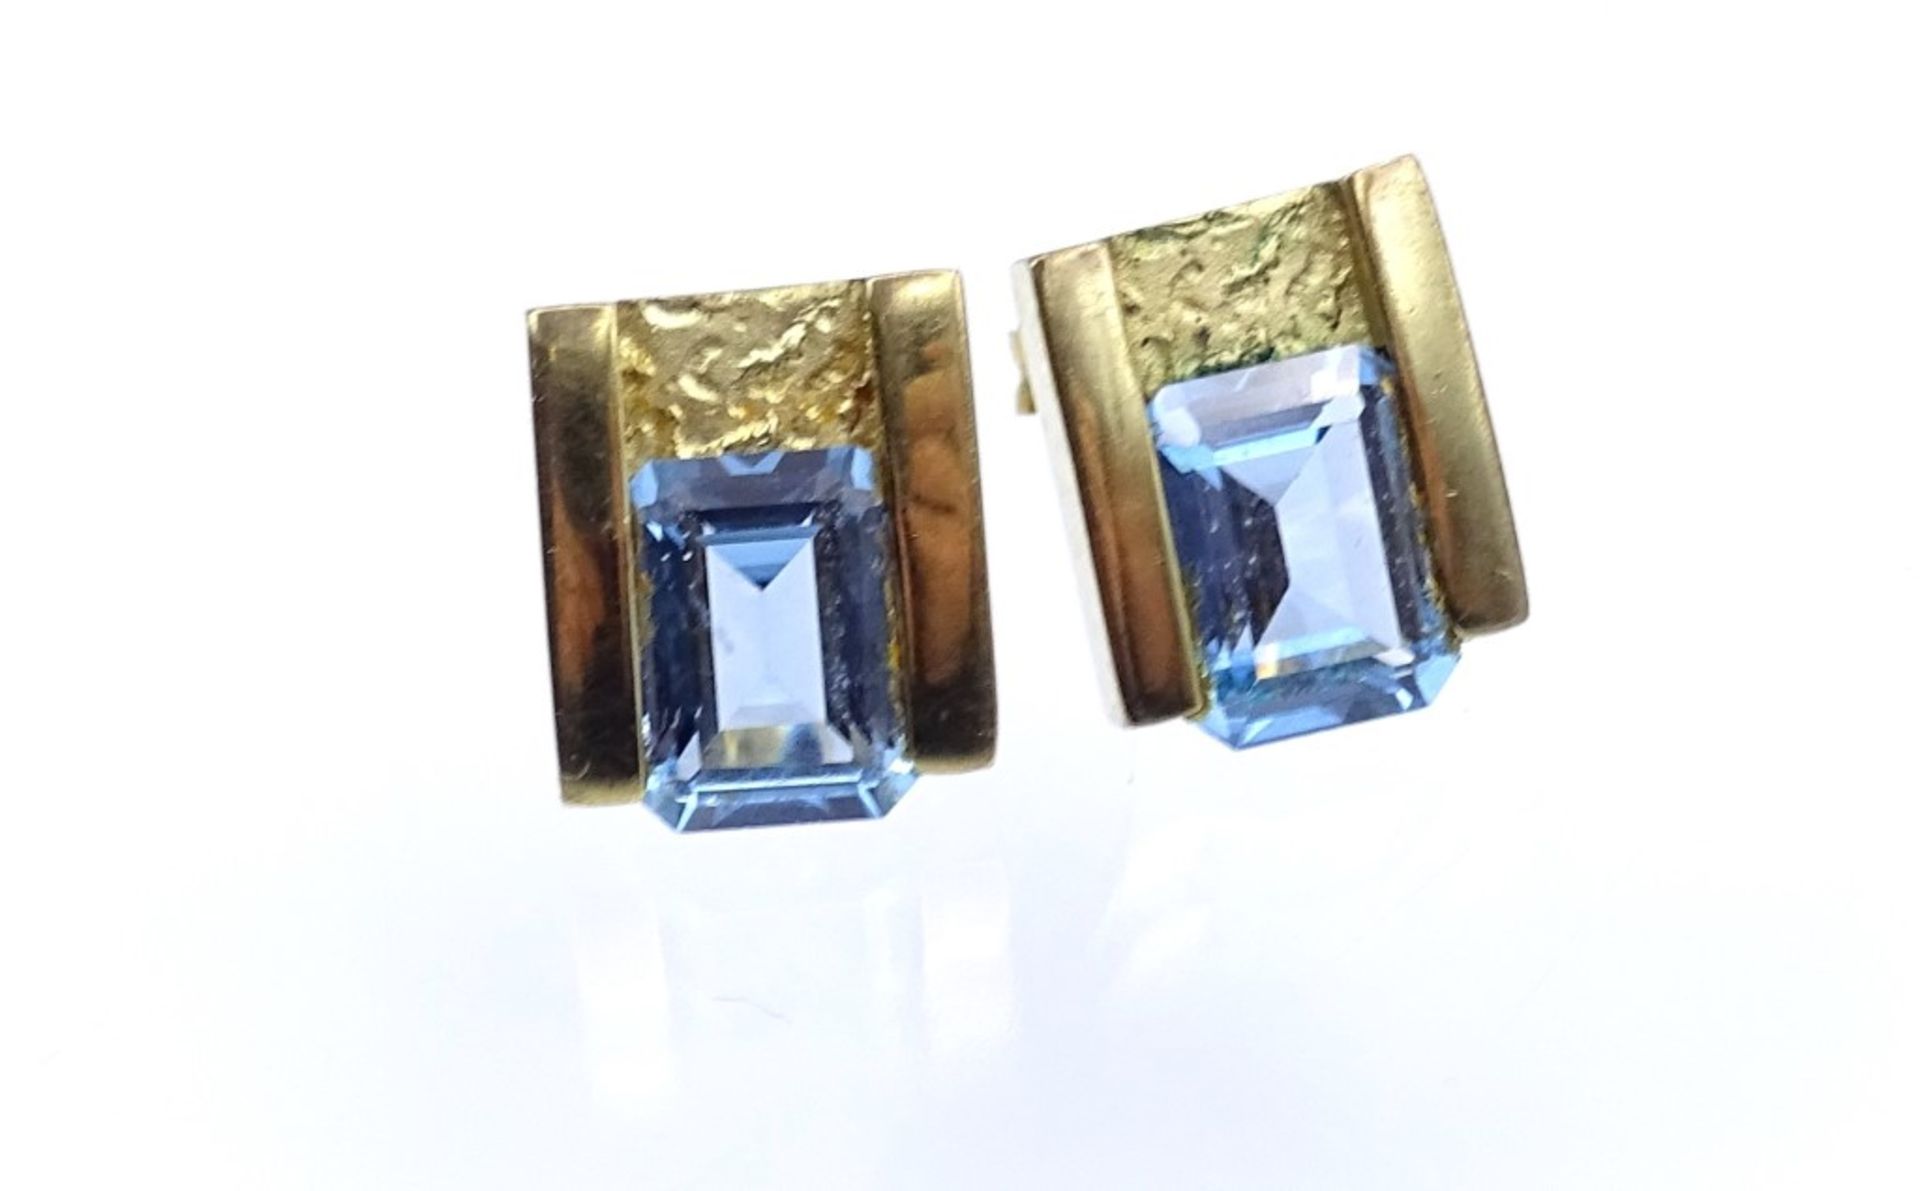 Paar GG Ohrstecker in 333er Gold, diese mit hellblauen facettierten Steinen besetzt,ges.Gew.3,5gr.,- - Bild 3 aus 4